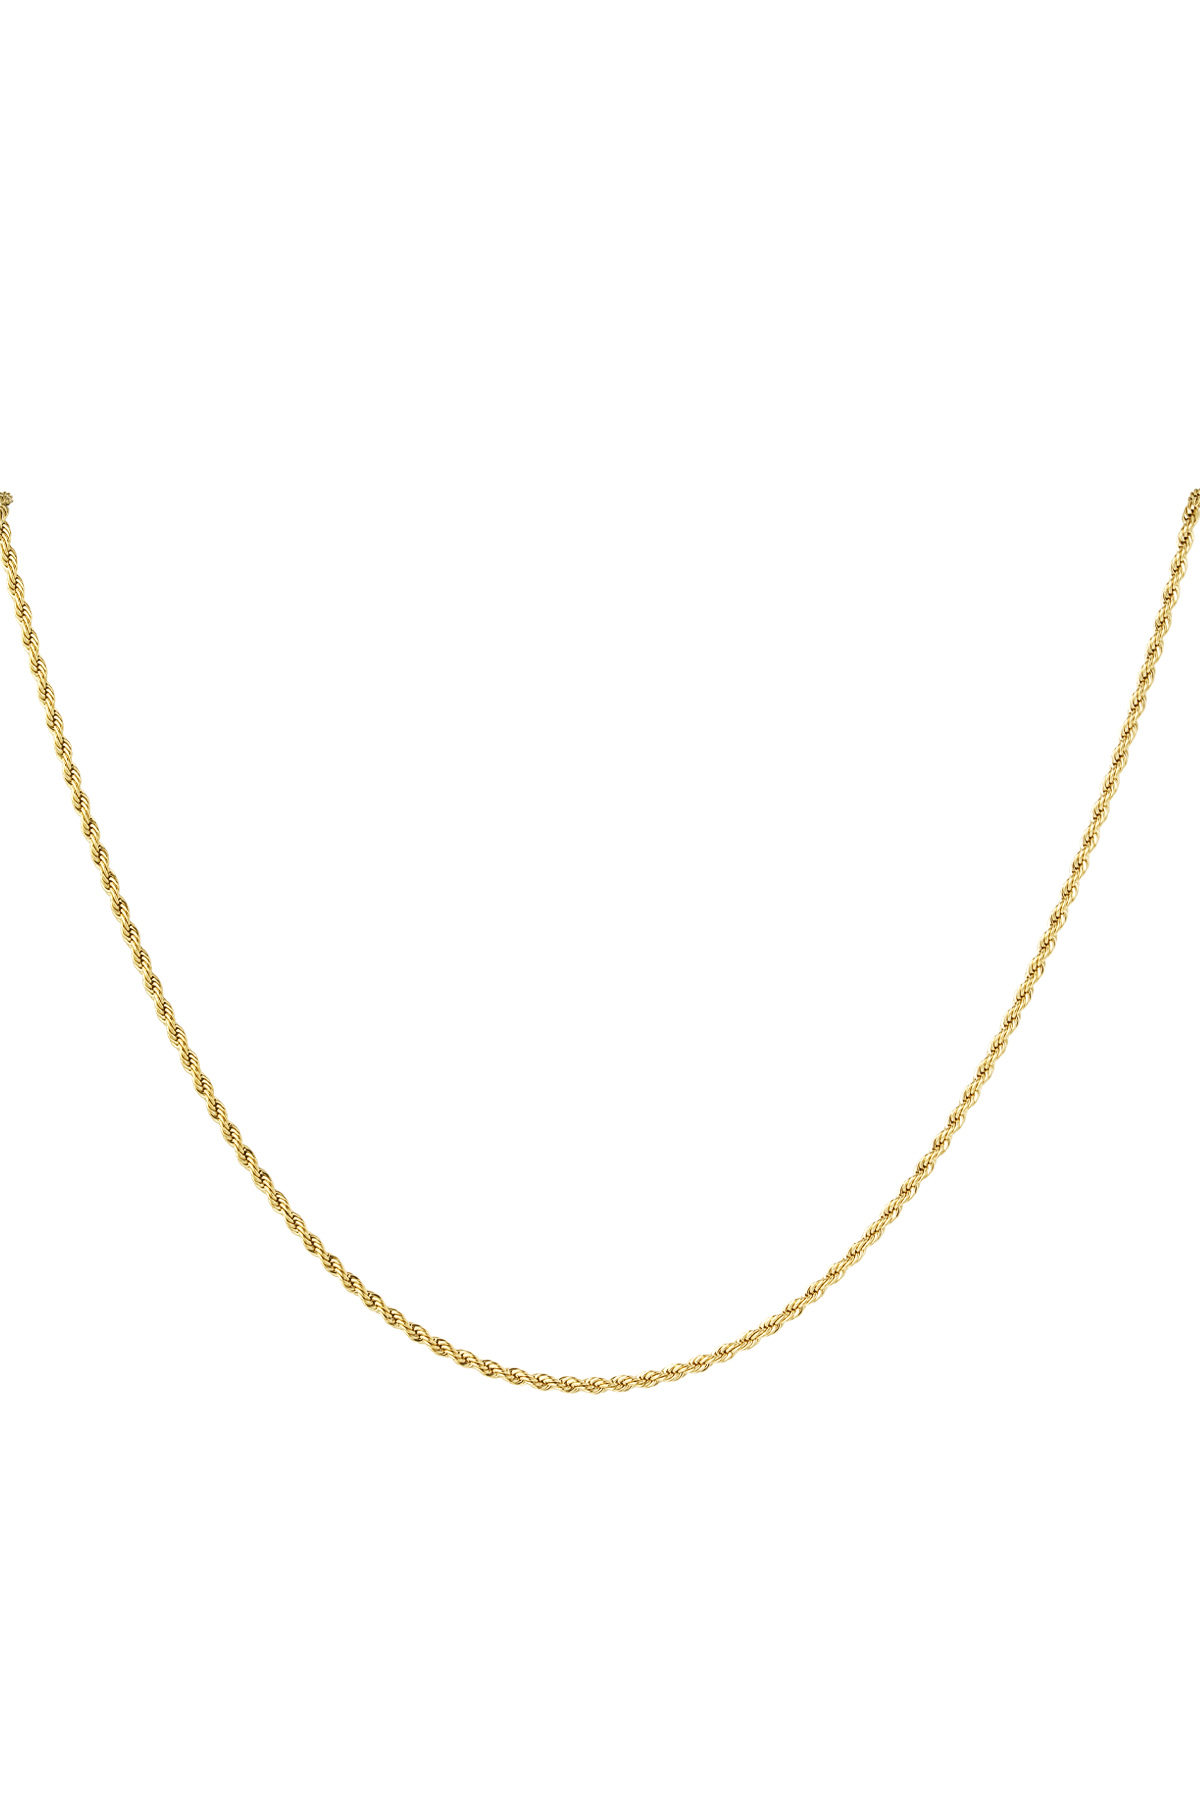 Unisex-Halskette gedreht lang - Gold